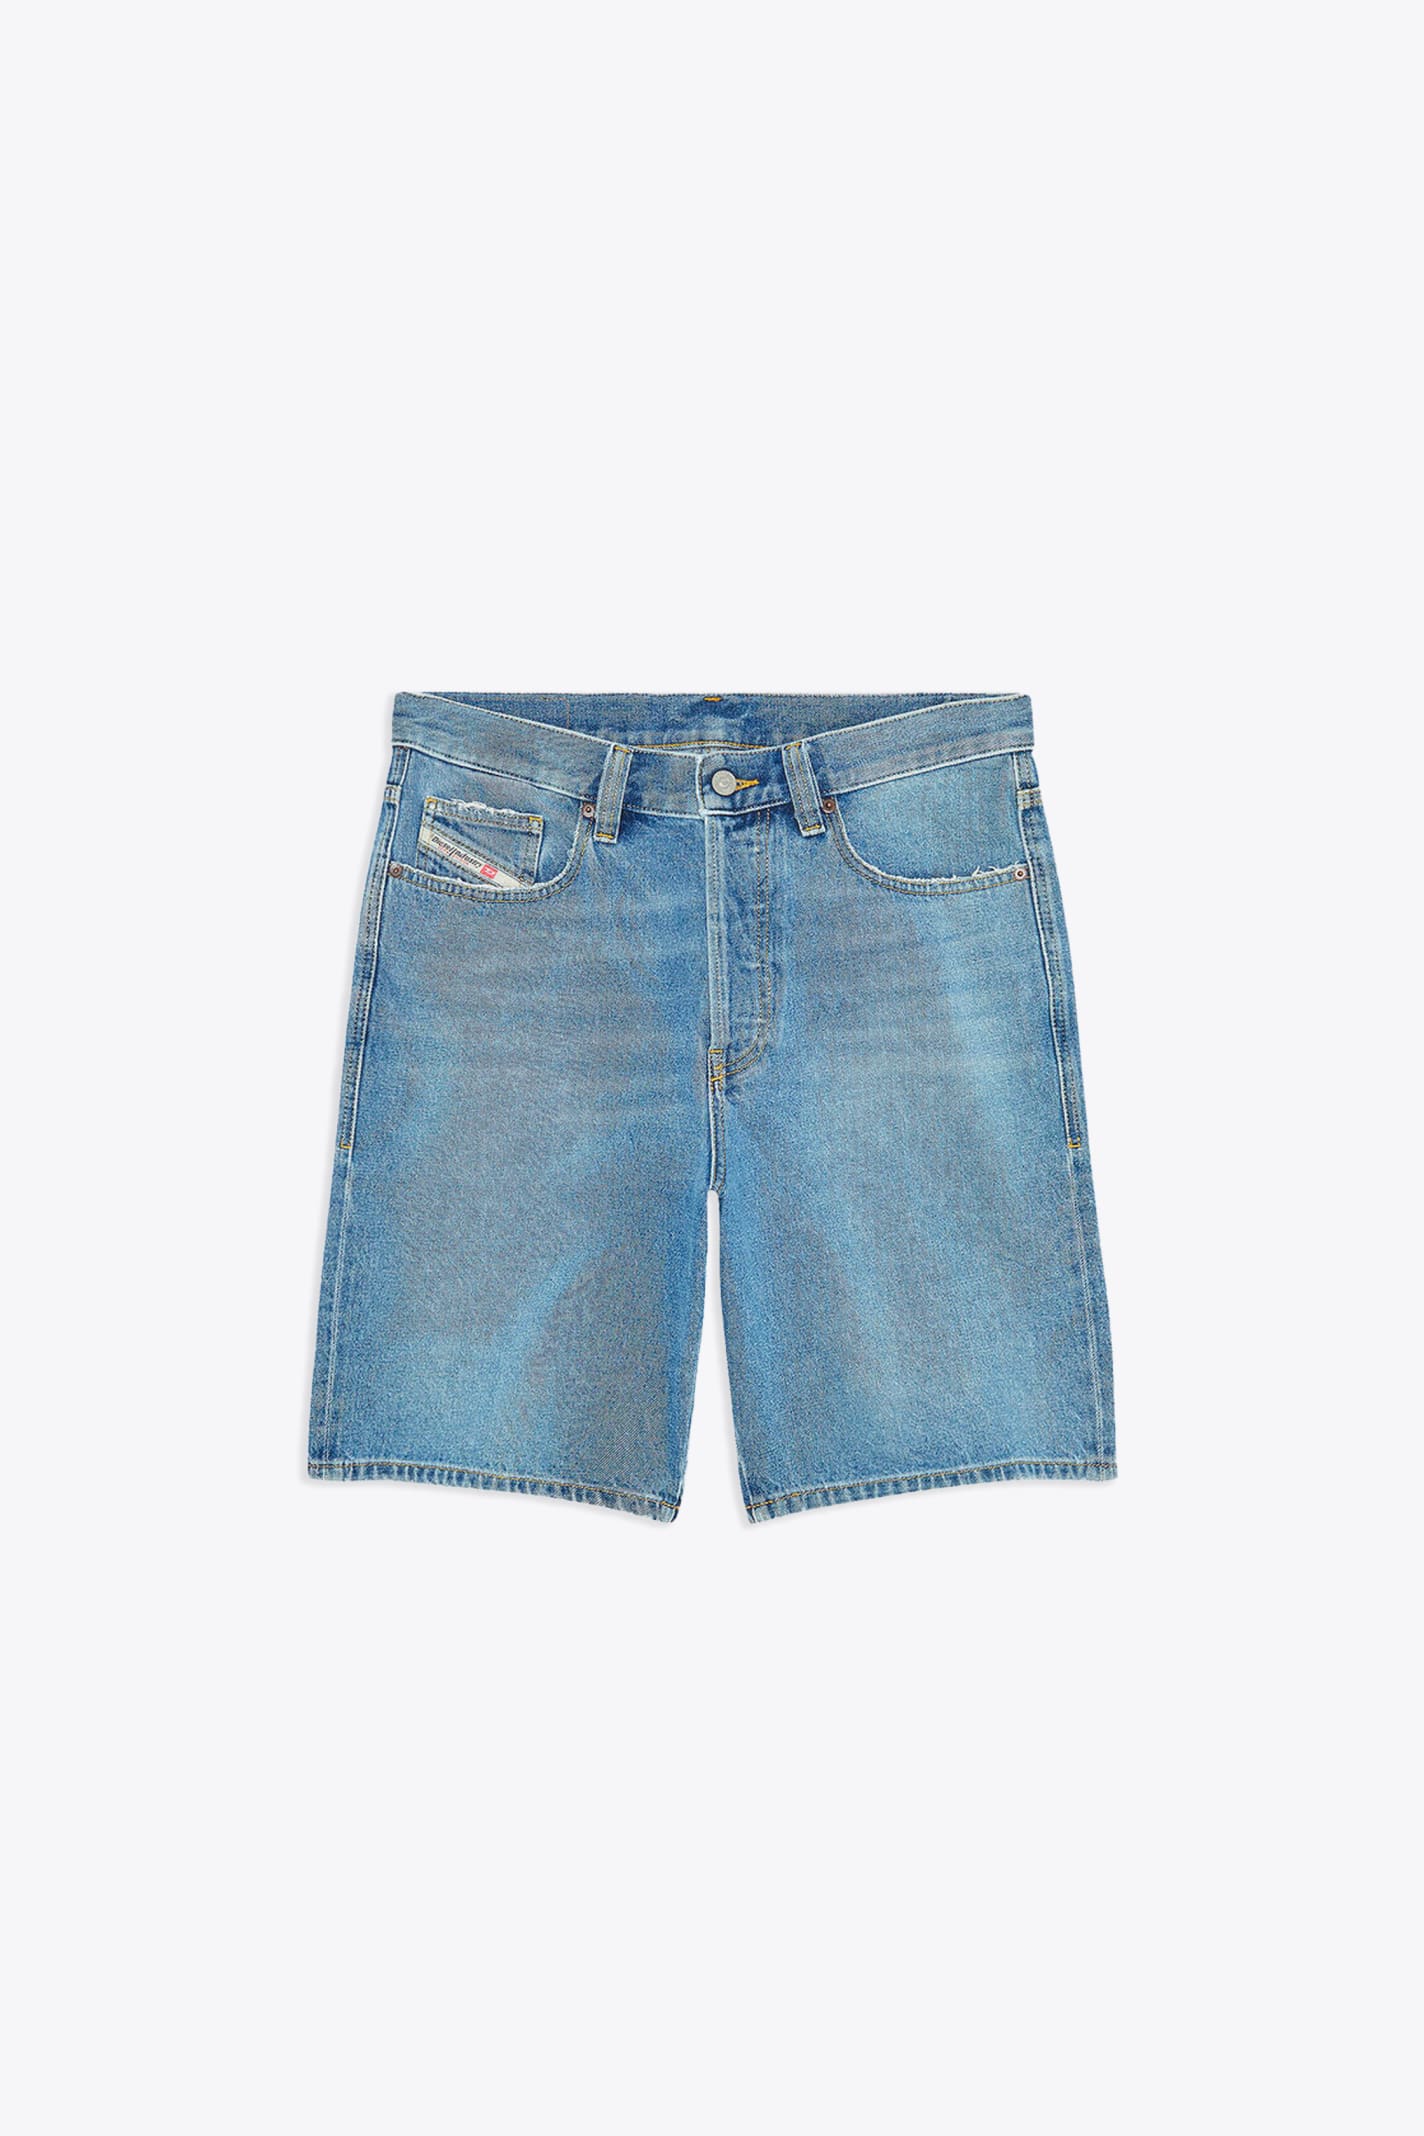 0dqaf Regular-short Light blue denim 5 pockets short - Regular Short